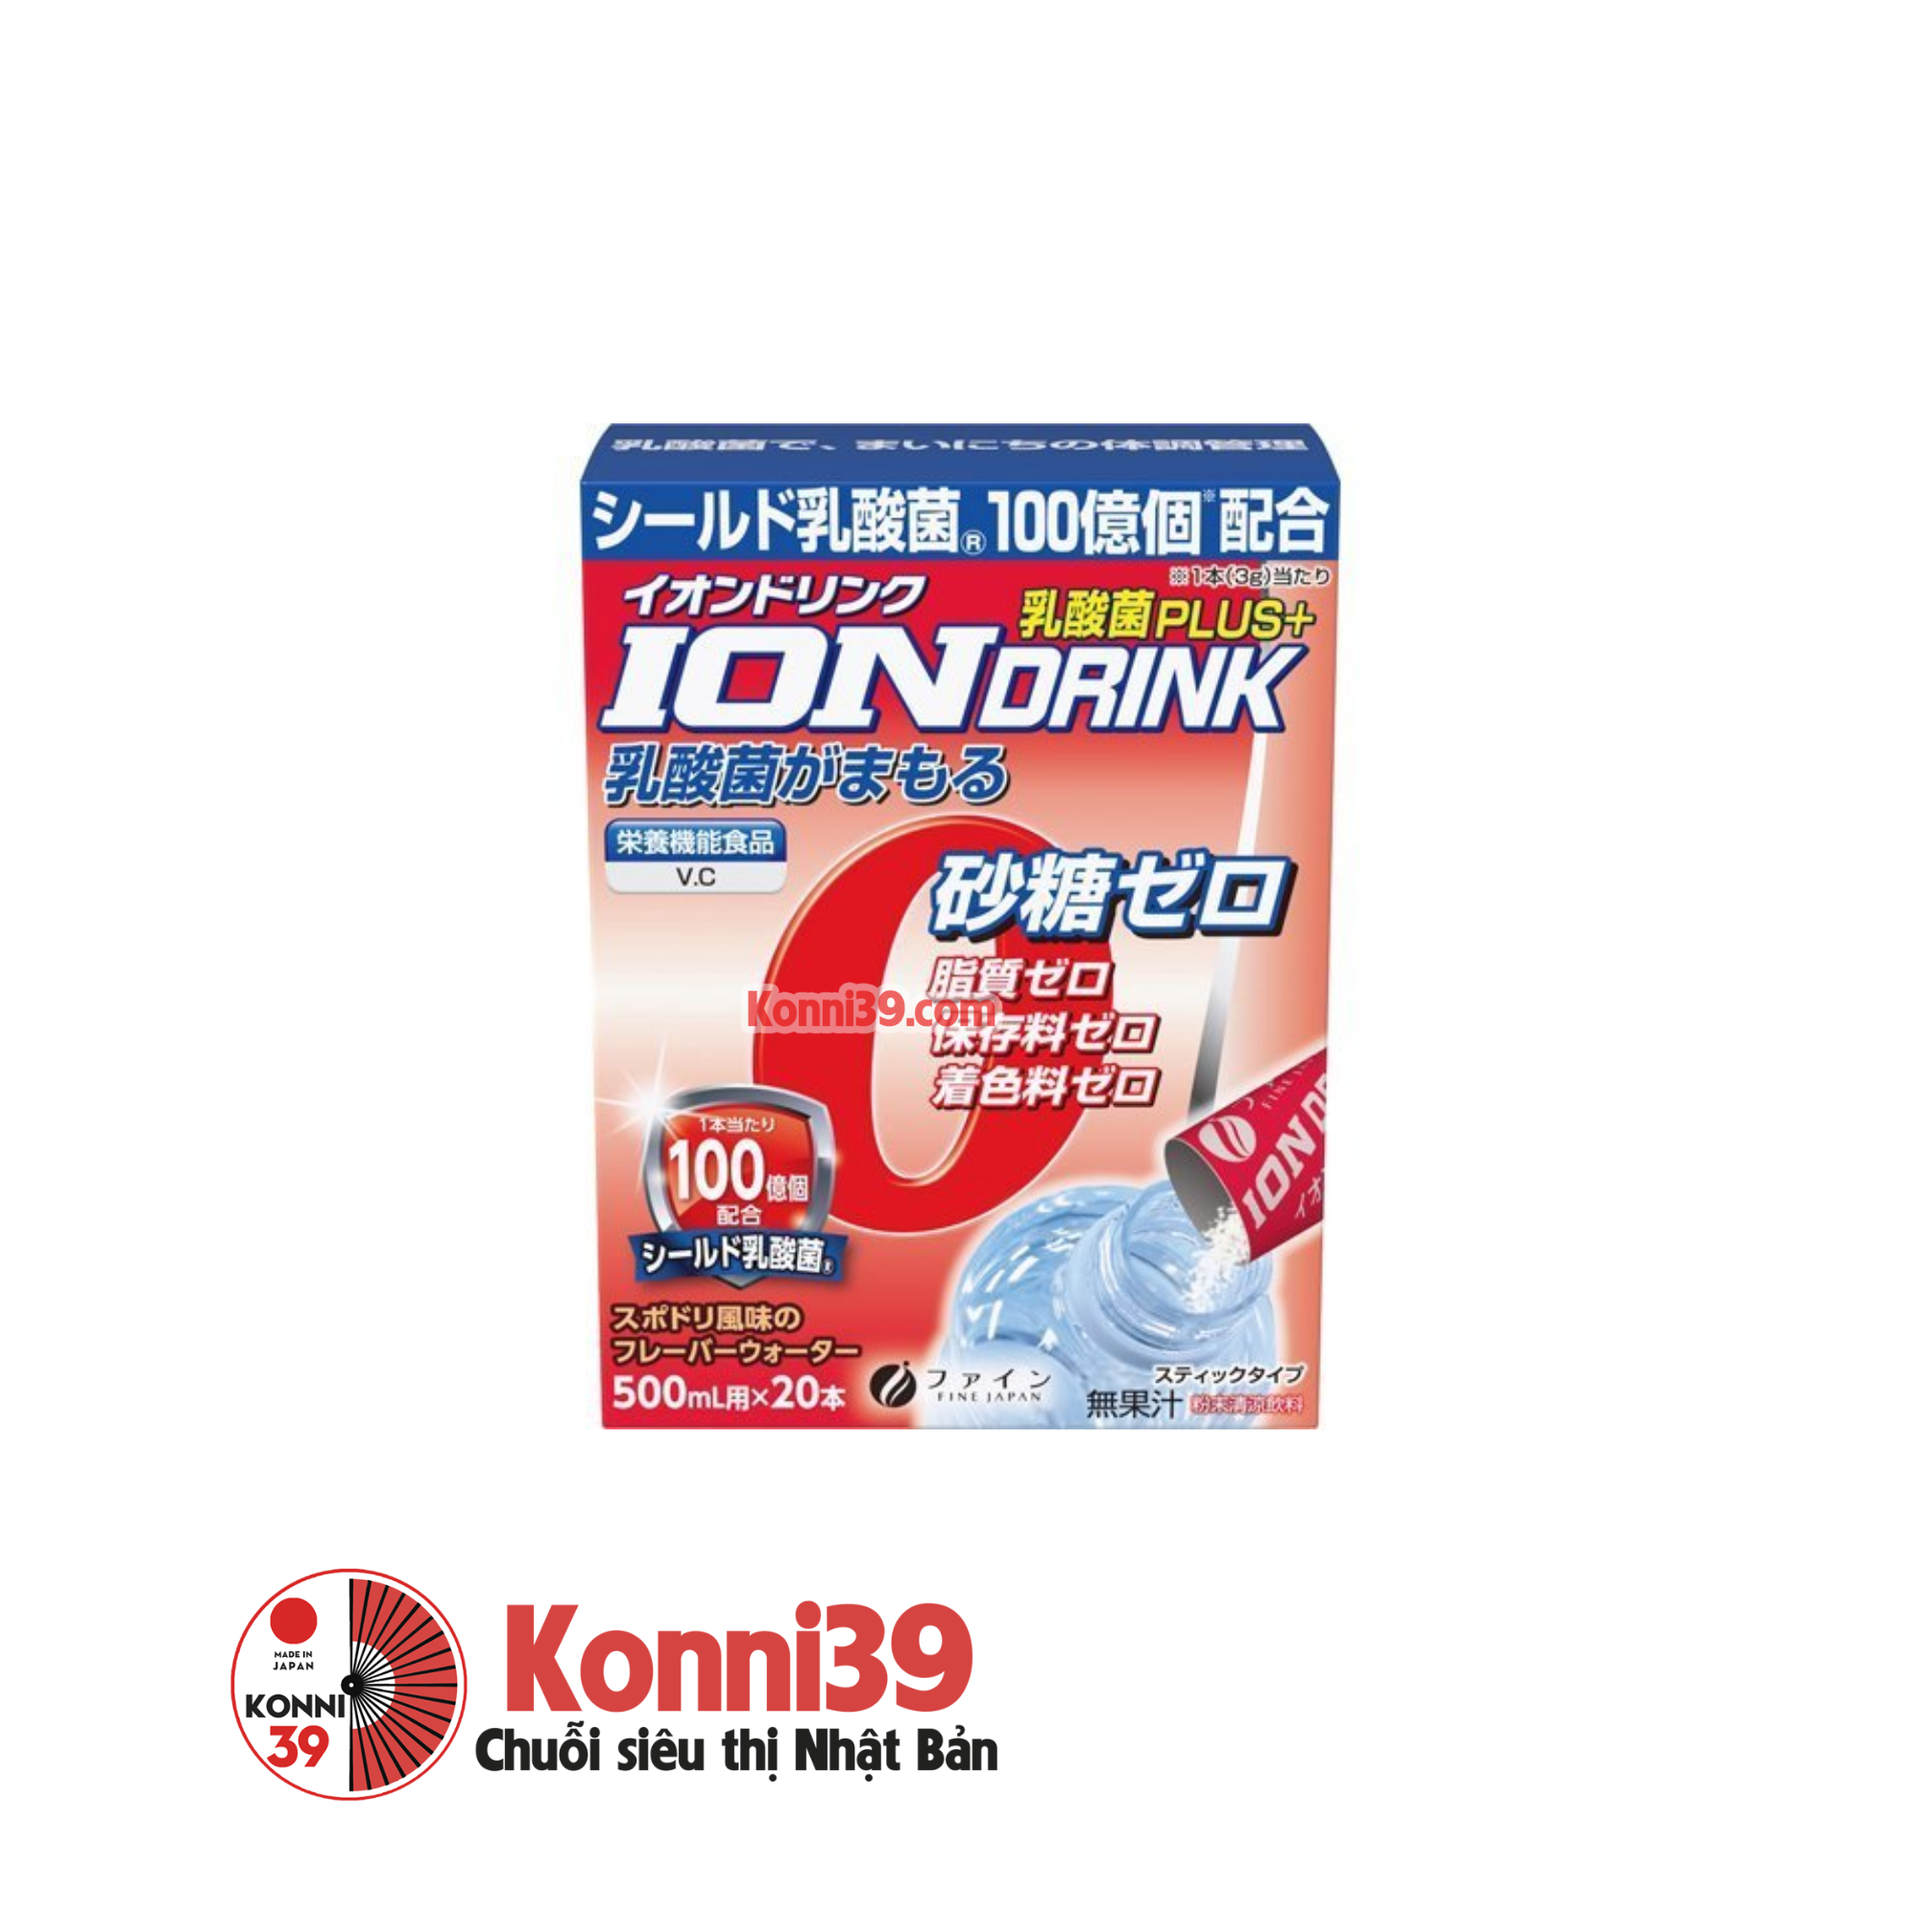 Bột pha nước uống Fine Ion điện giải và bổ sung Axit Lactic và Vitamin C  hộp 3g x 20 gói - Chuỗi siêu thị Nhật Bản nội địa - Made in Japan Konni39  tại Việt Nam